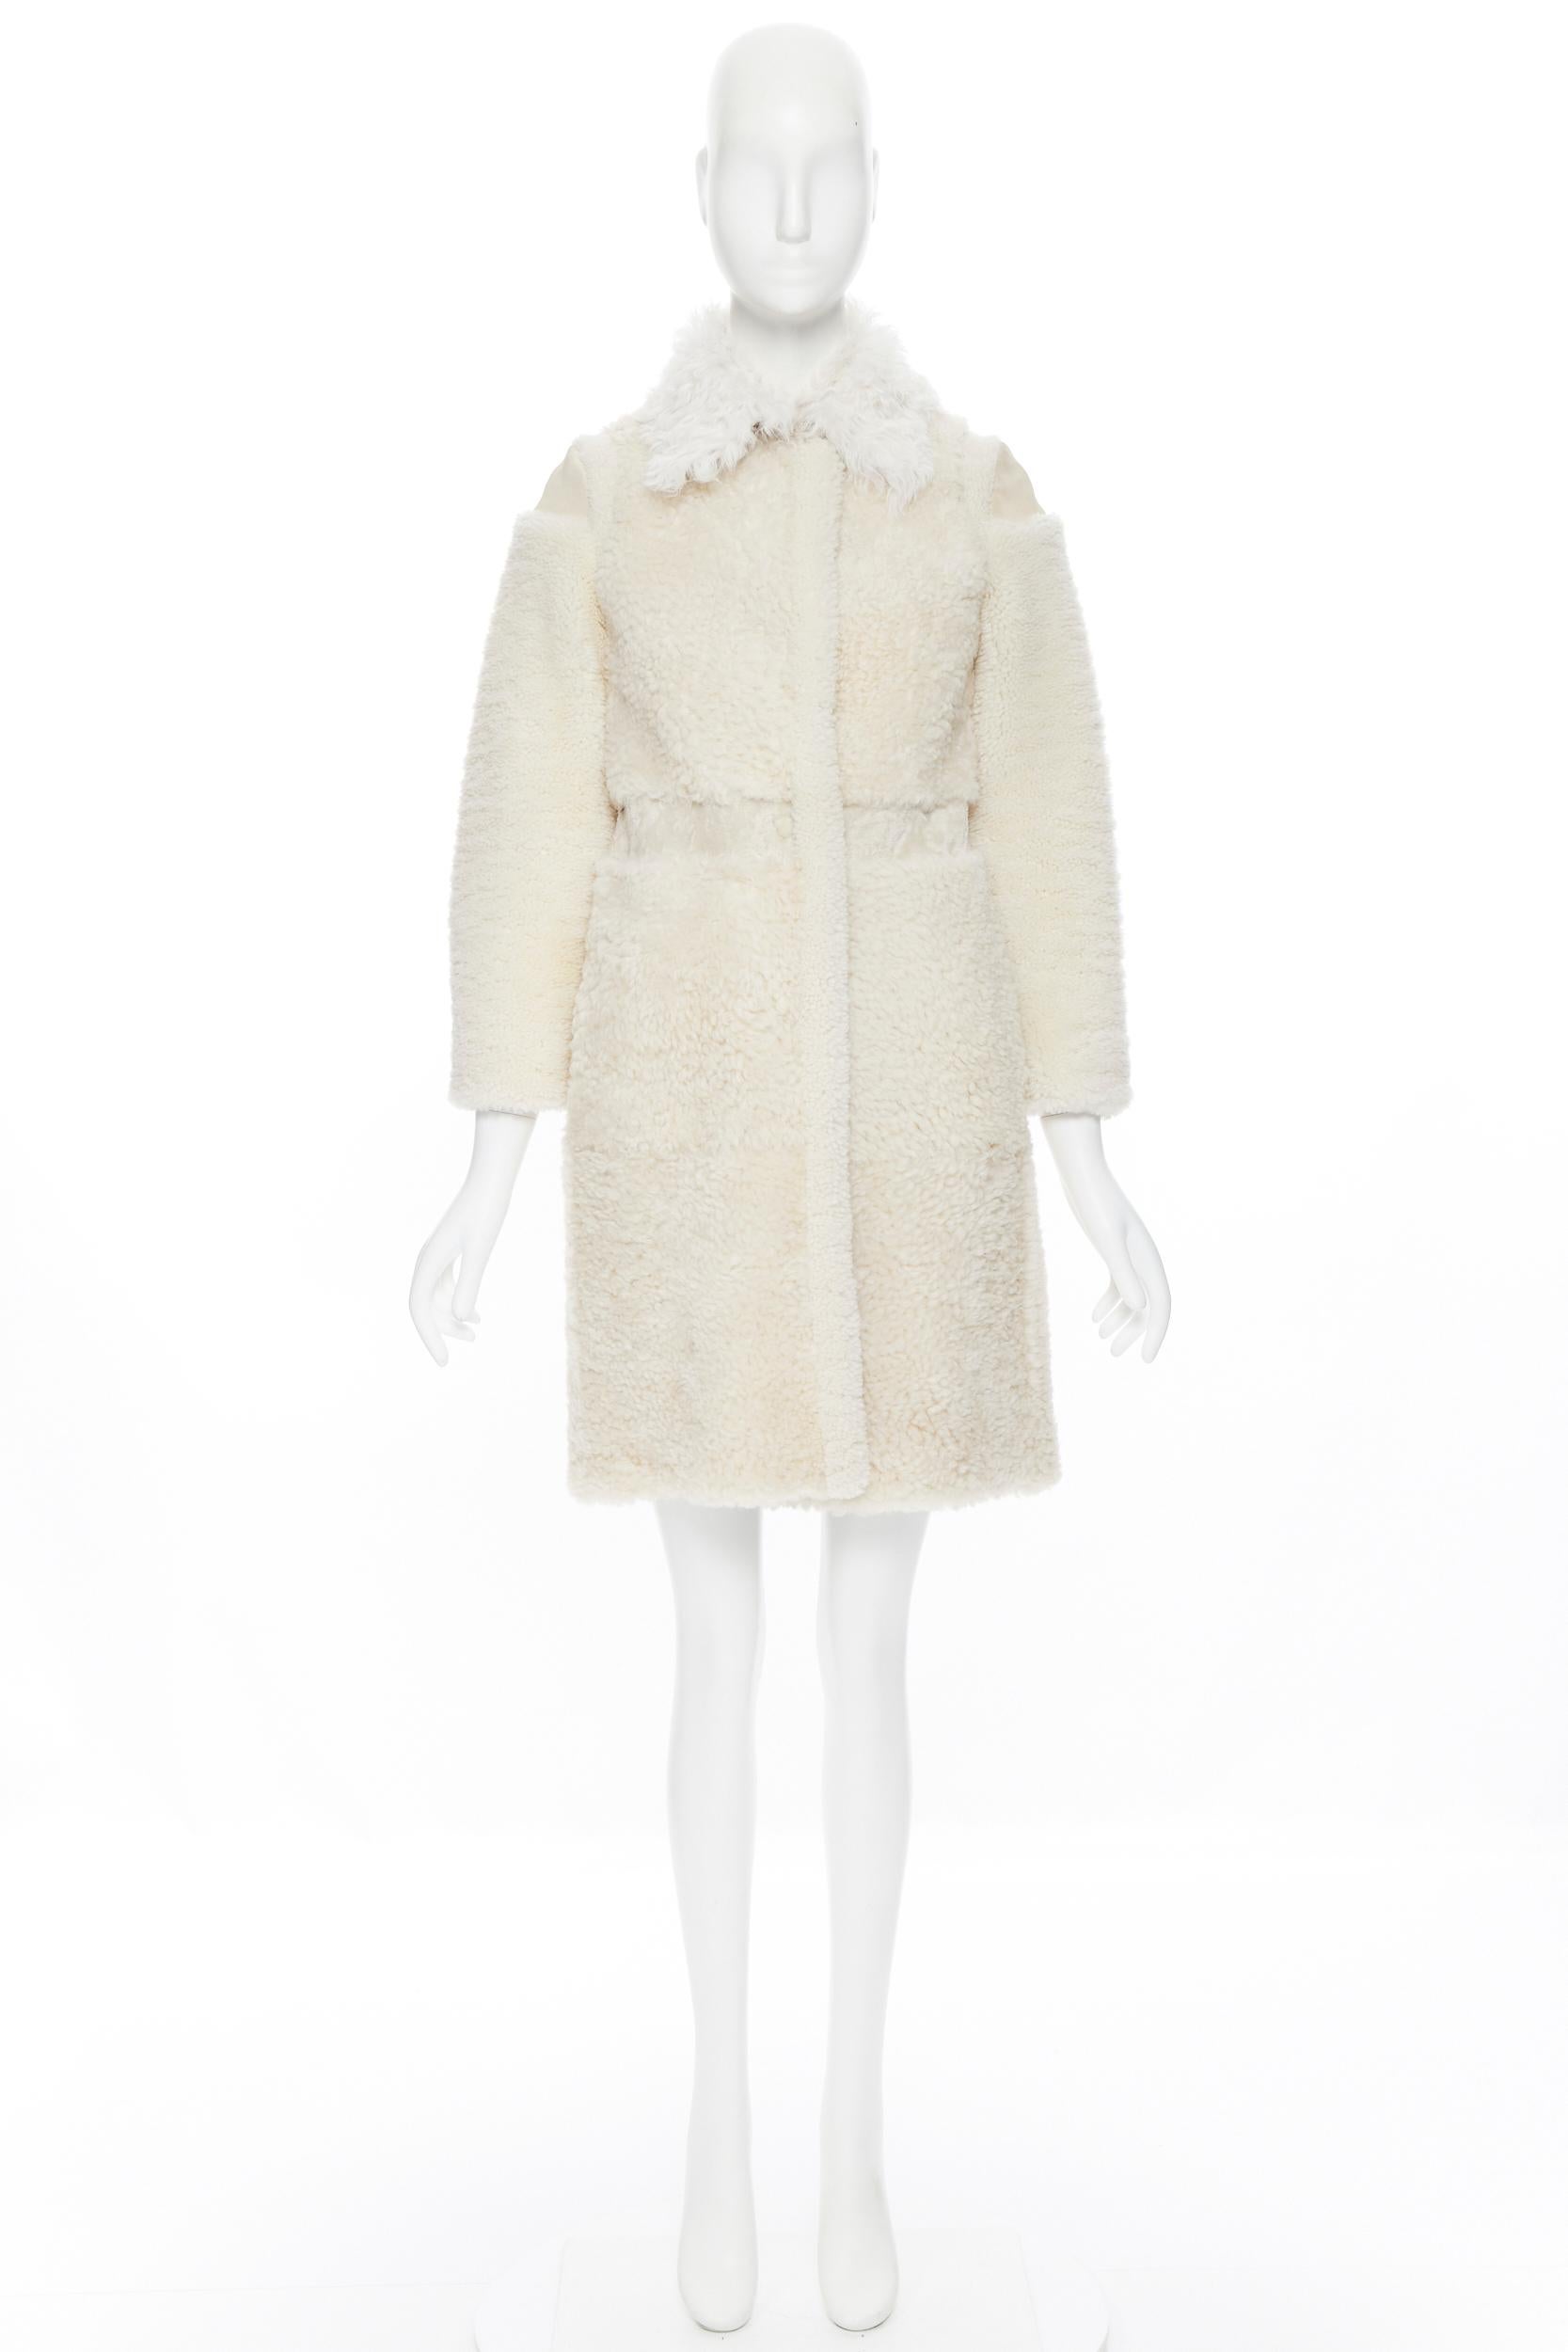 burberry winter coat